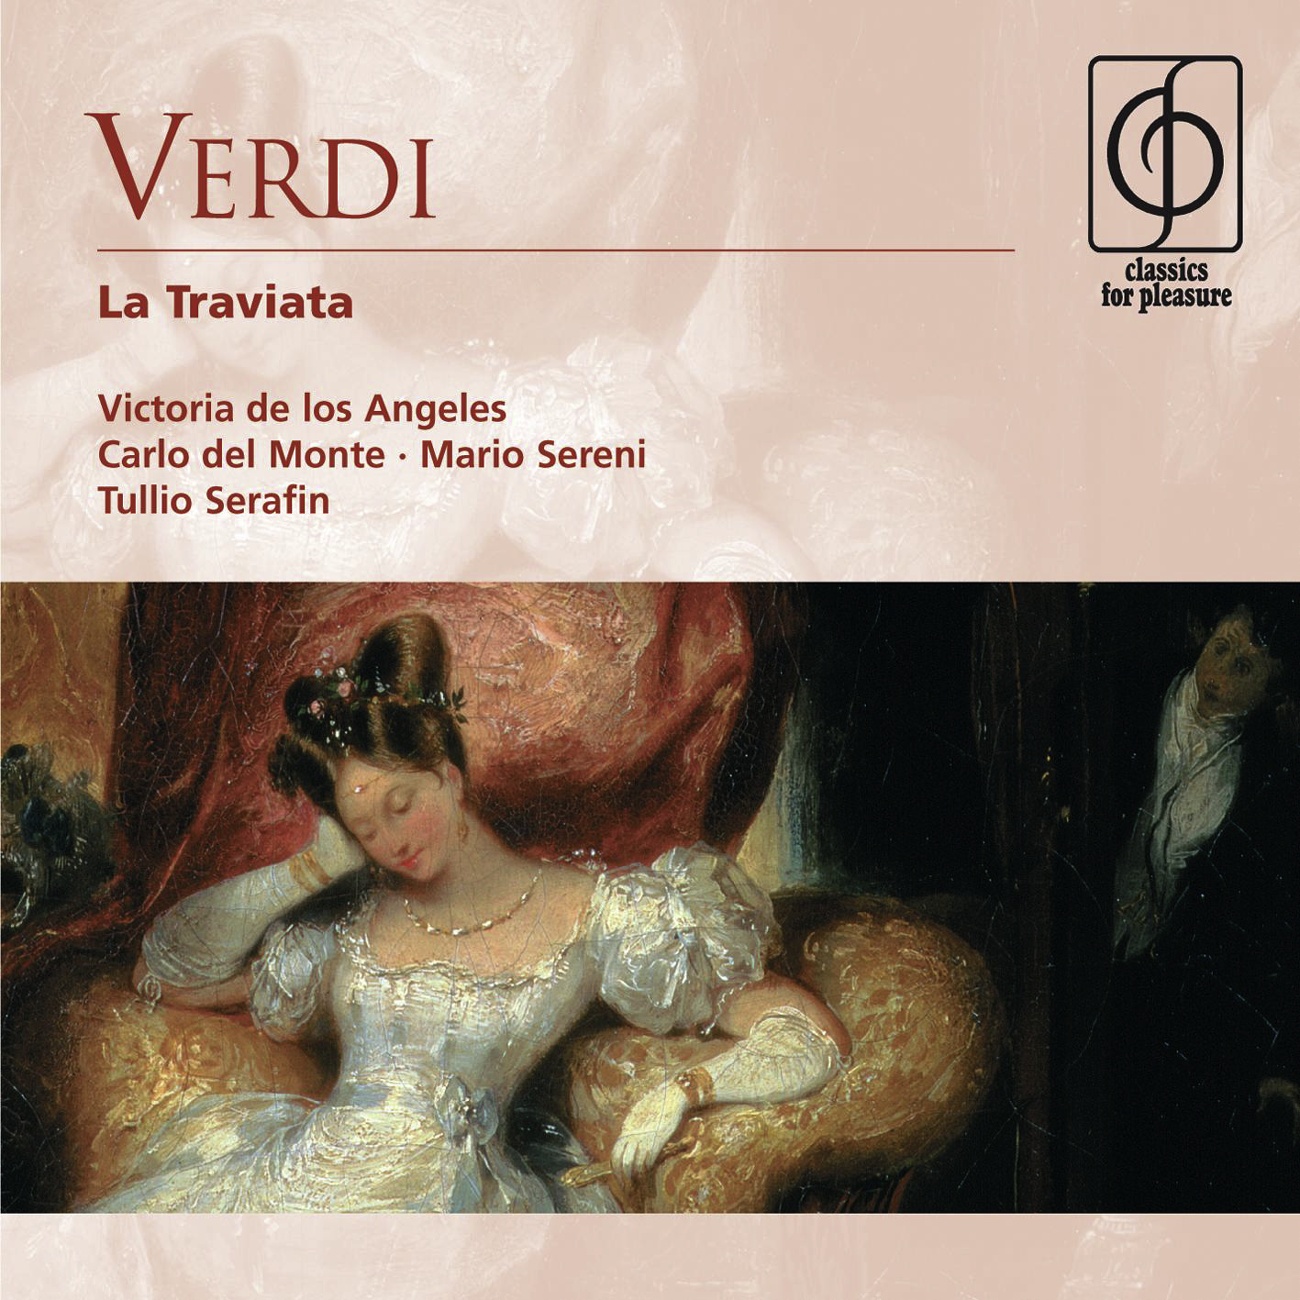 La Traviata - Opera in three acts (1992 Digital Remaster), Act I: Libiamo ne' lieti calici (Brindisi)